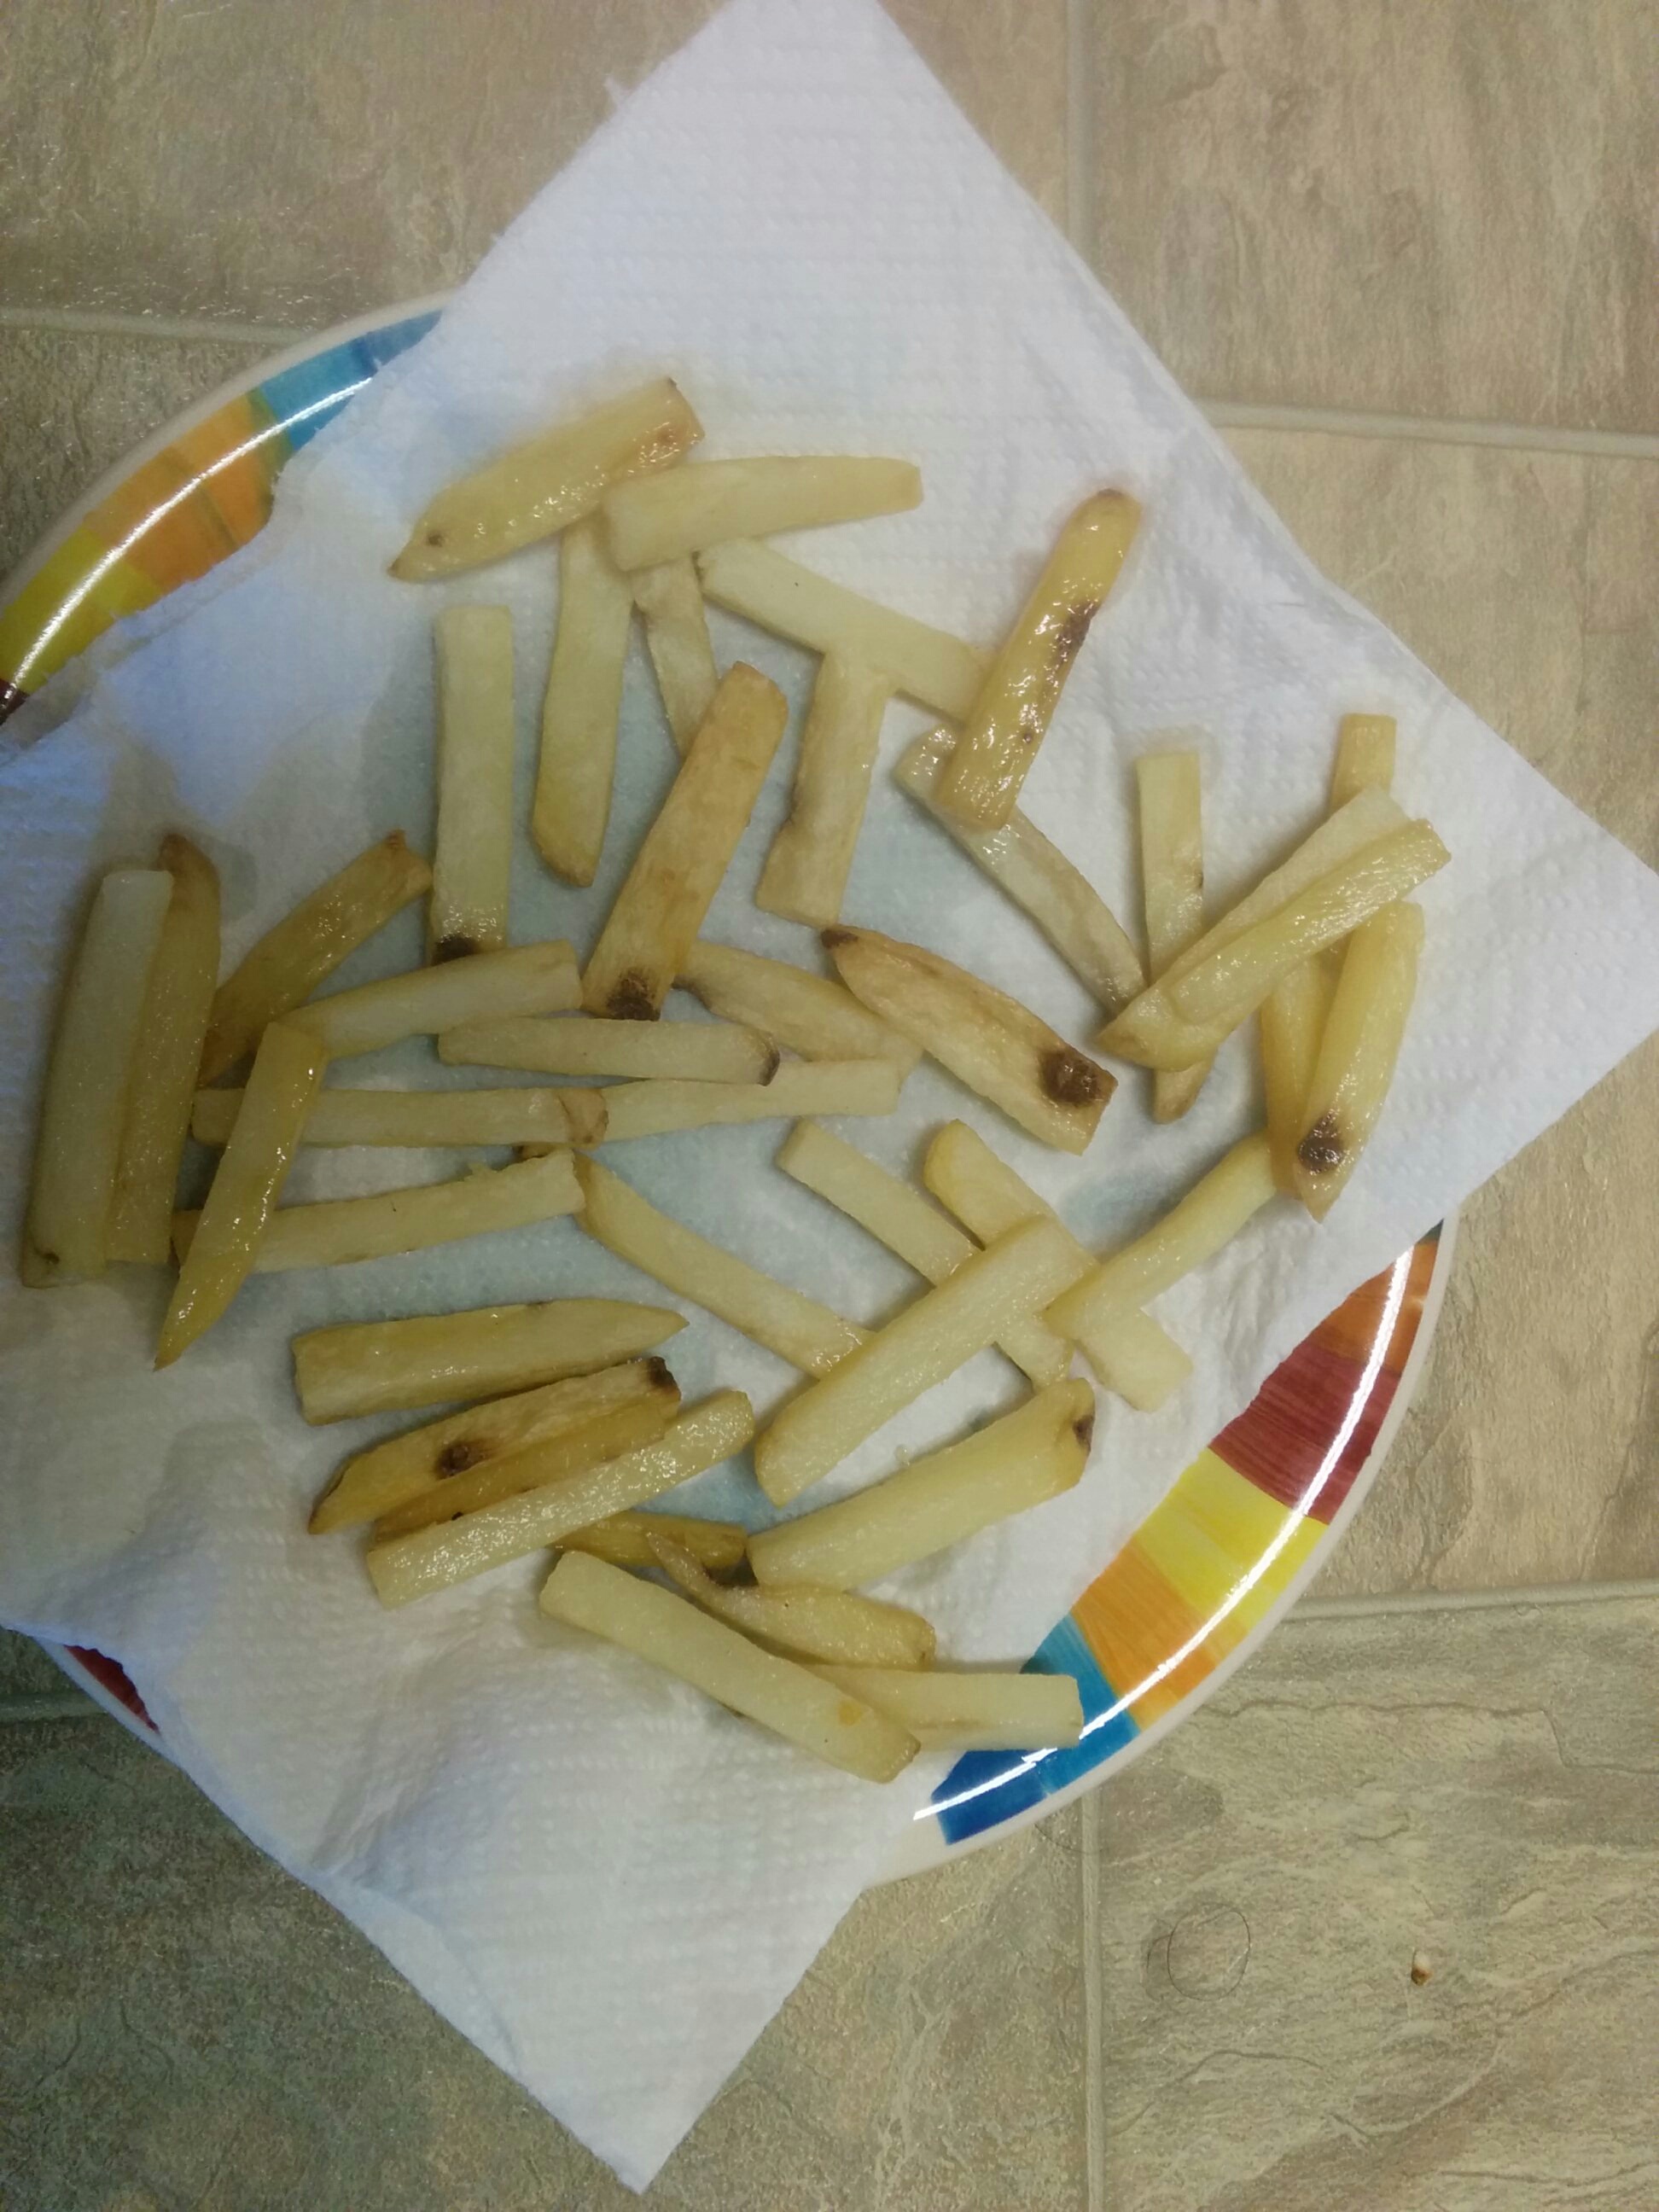 Final fries